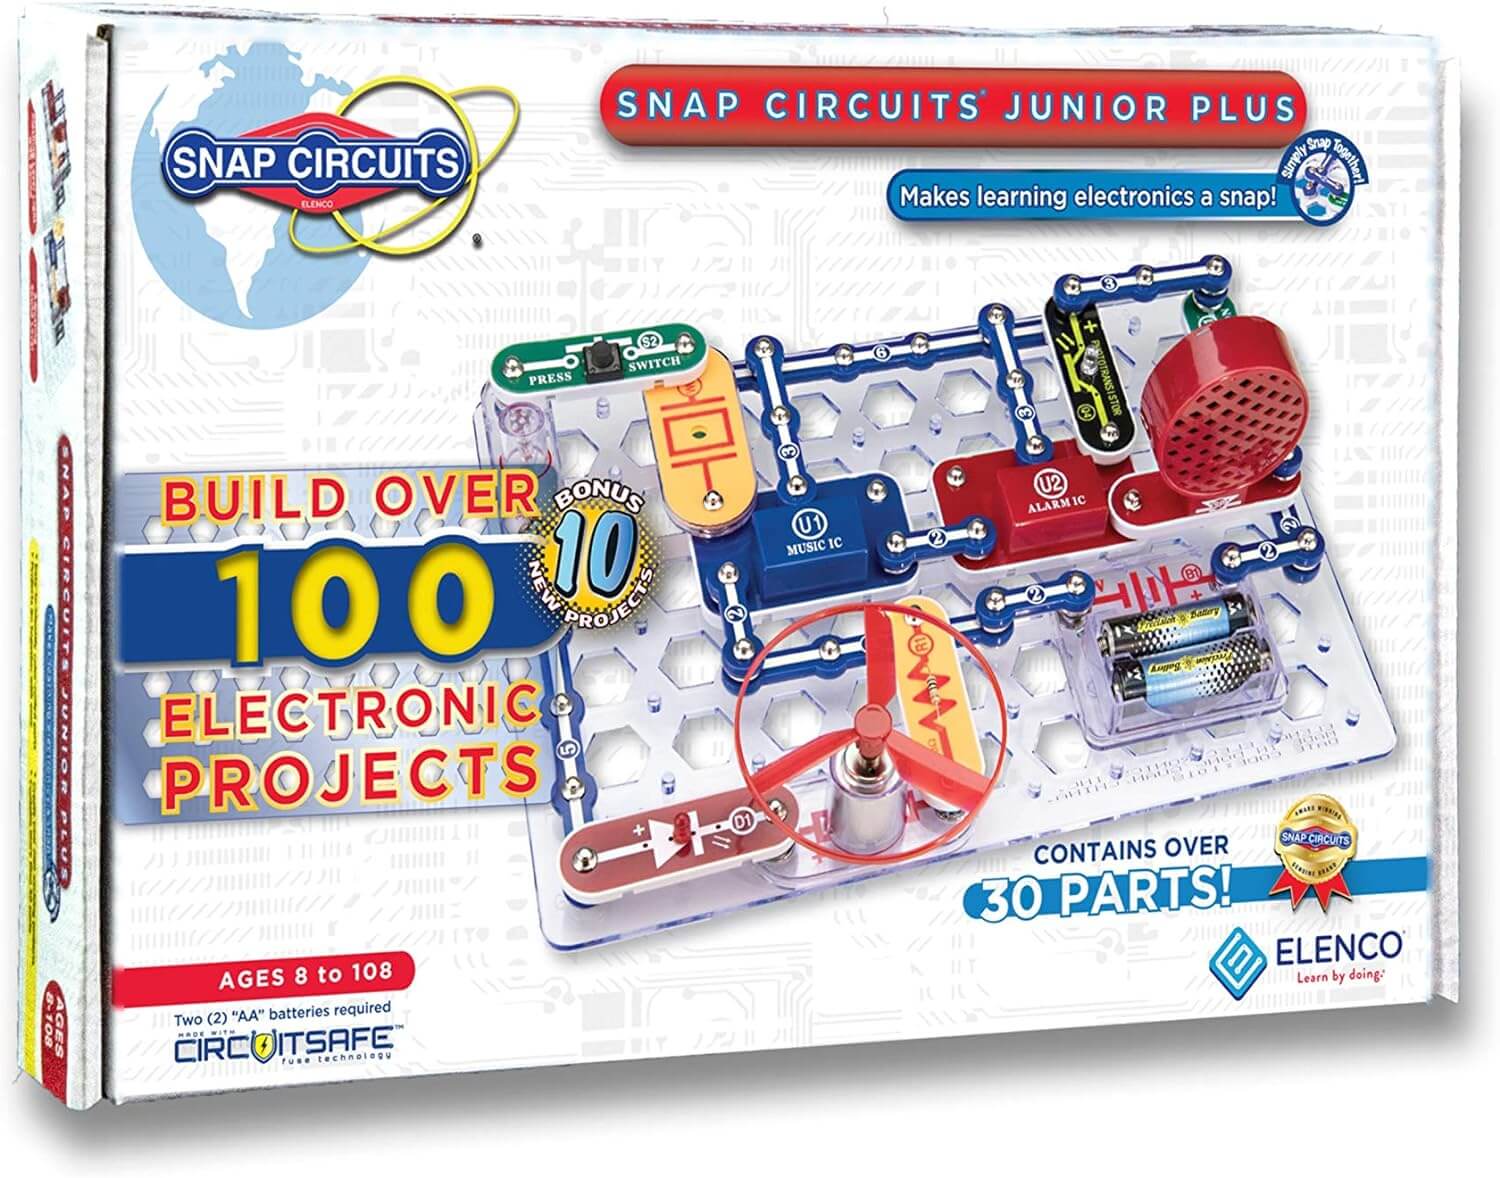 Snap Circuits Jr. 100